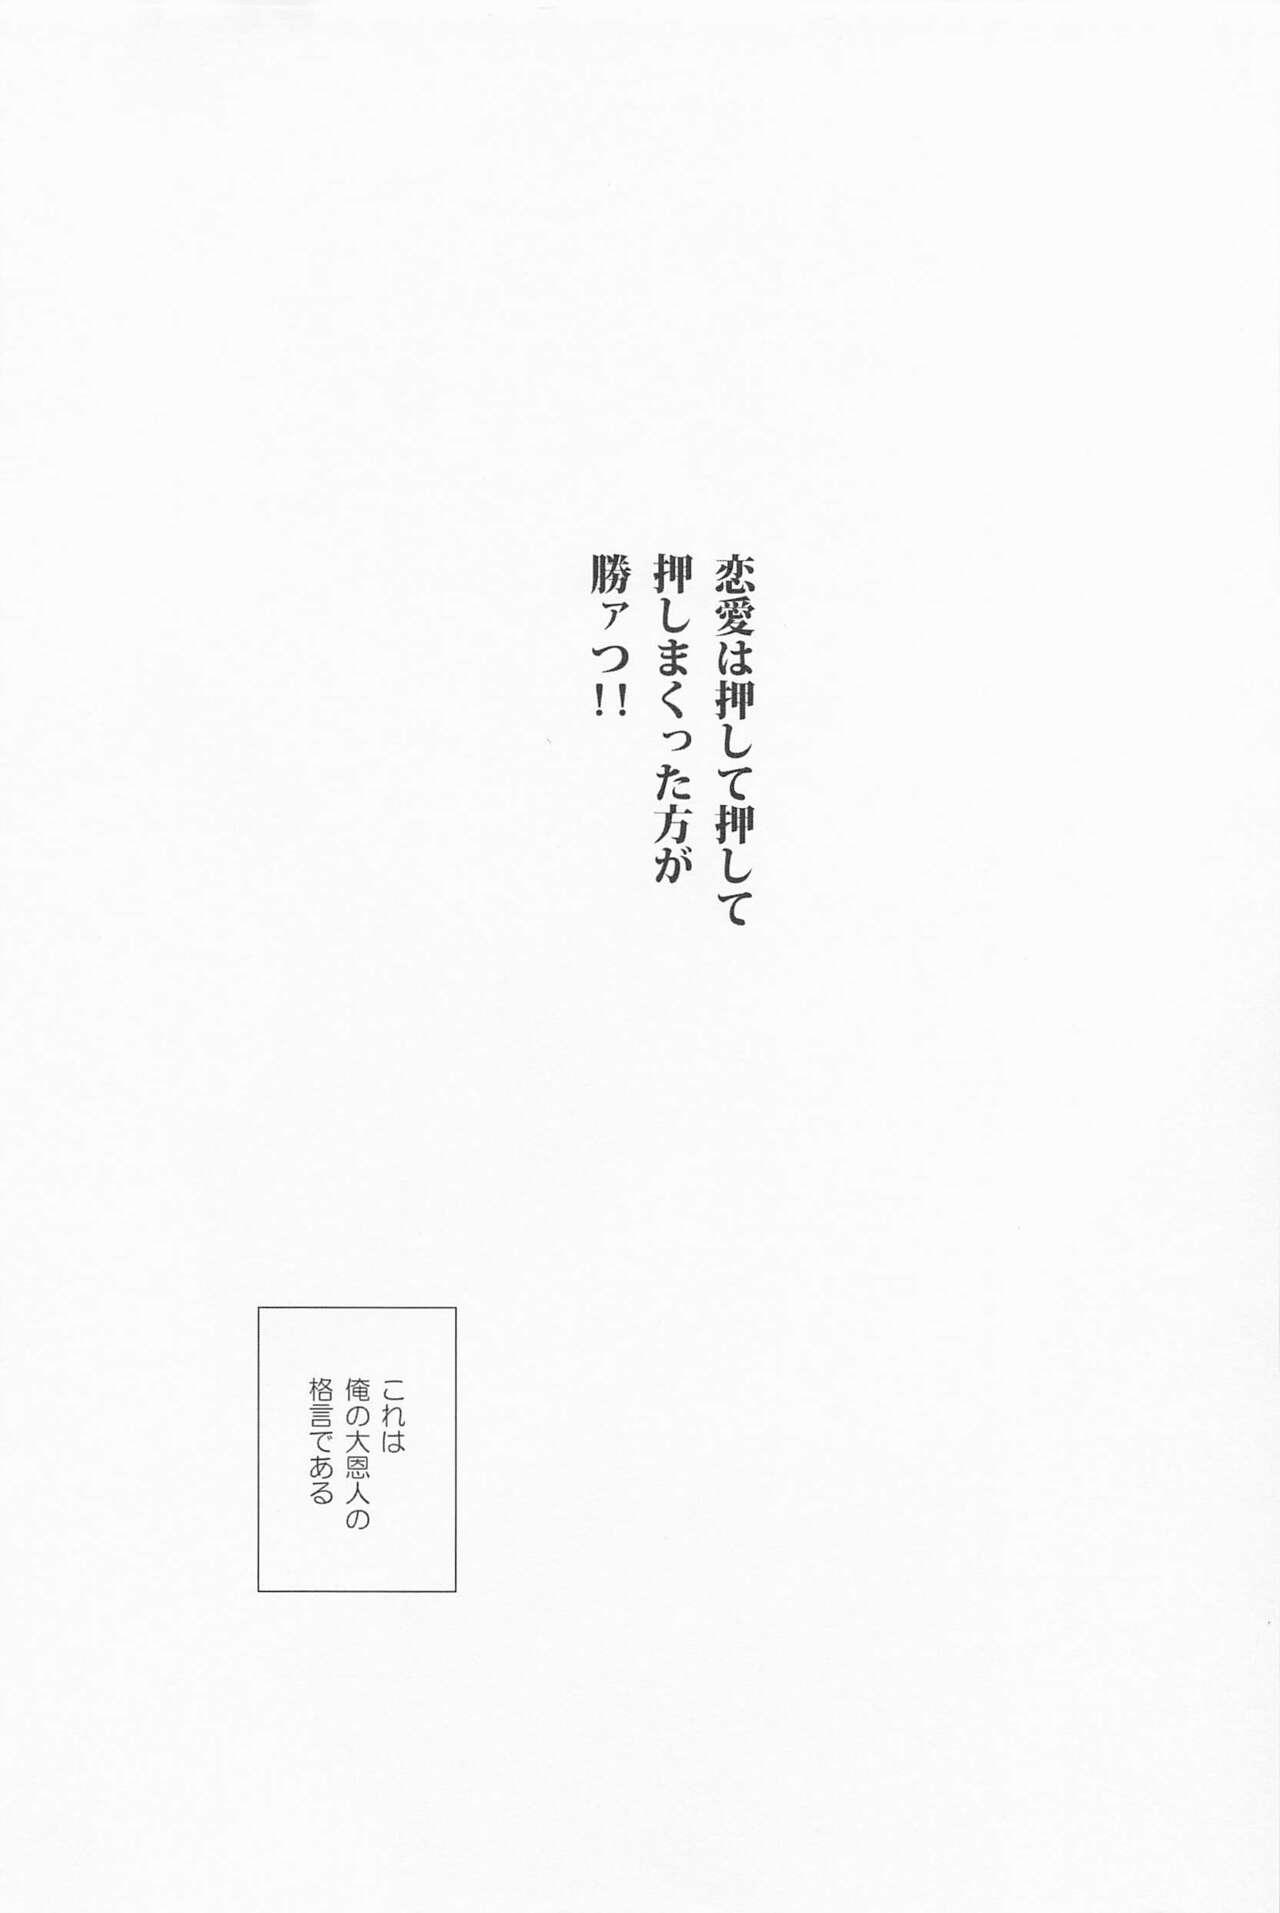 Blowjob kiminokuchibirunikamitsukitai - My hero academia | boku no hero academia Boyfriend - Page 2